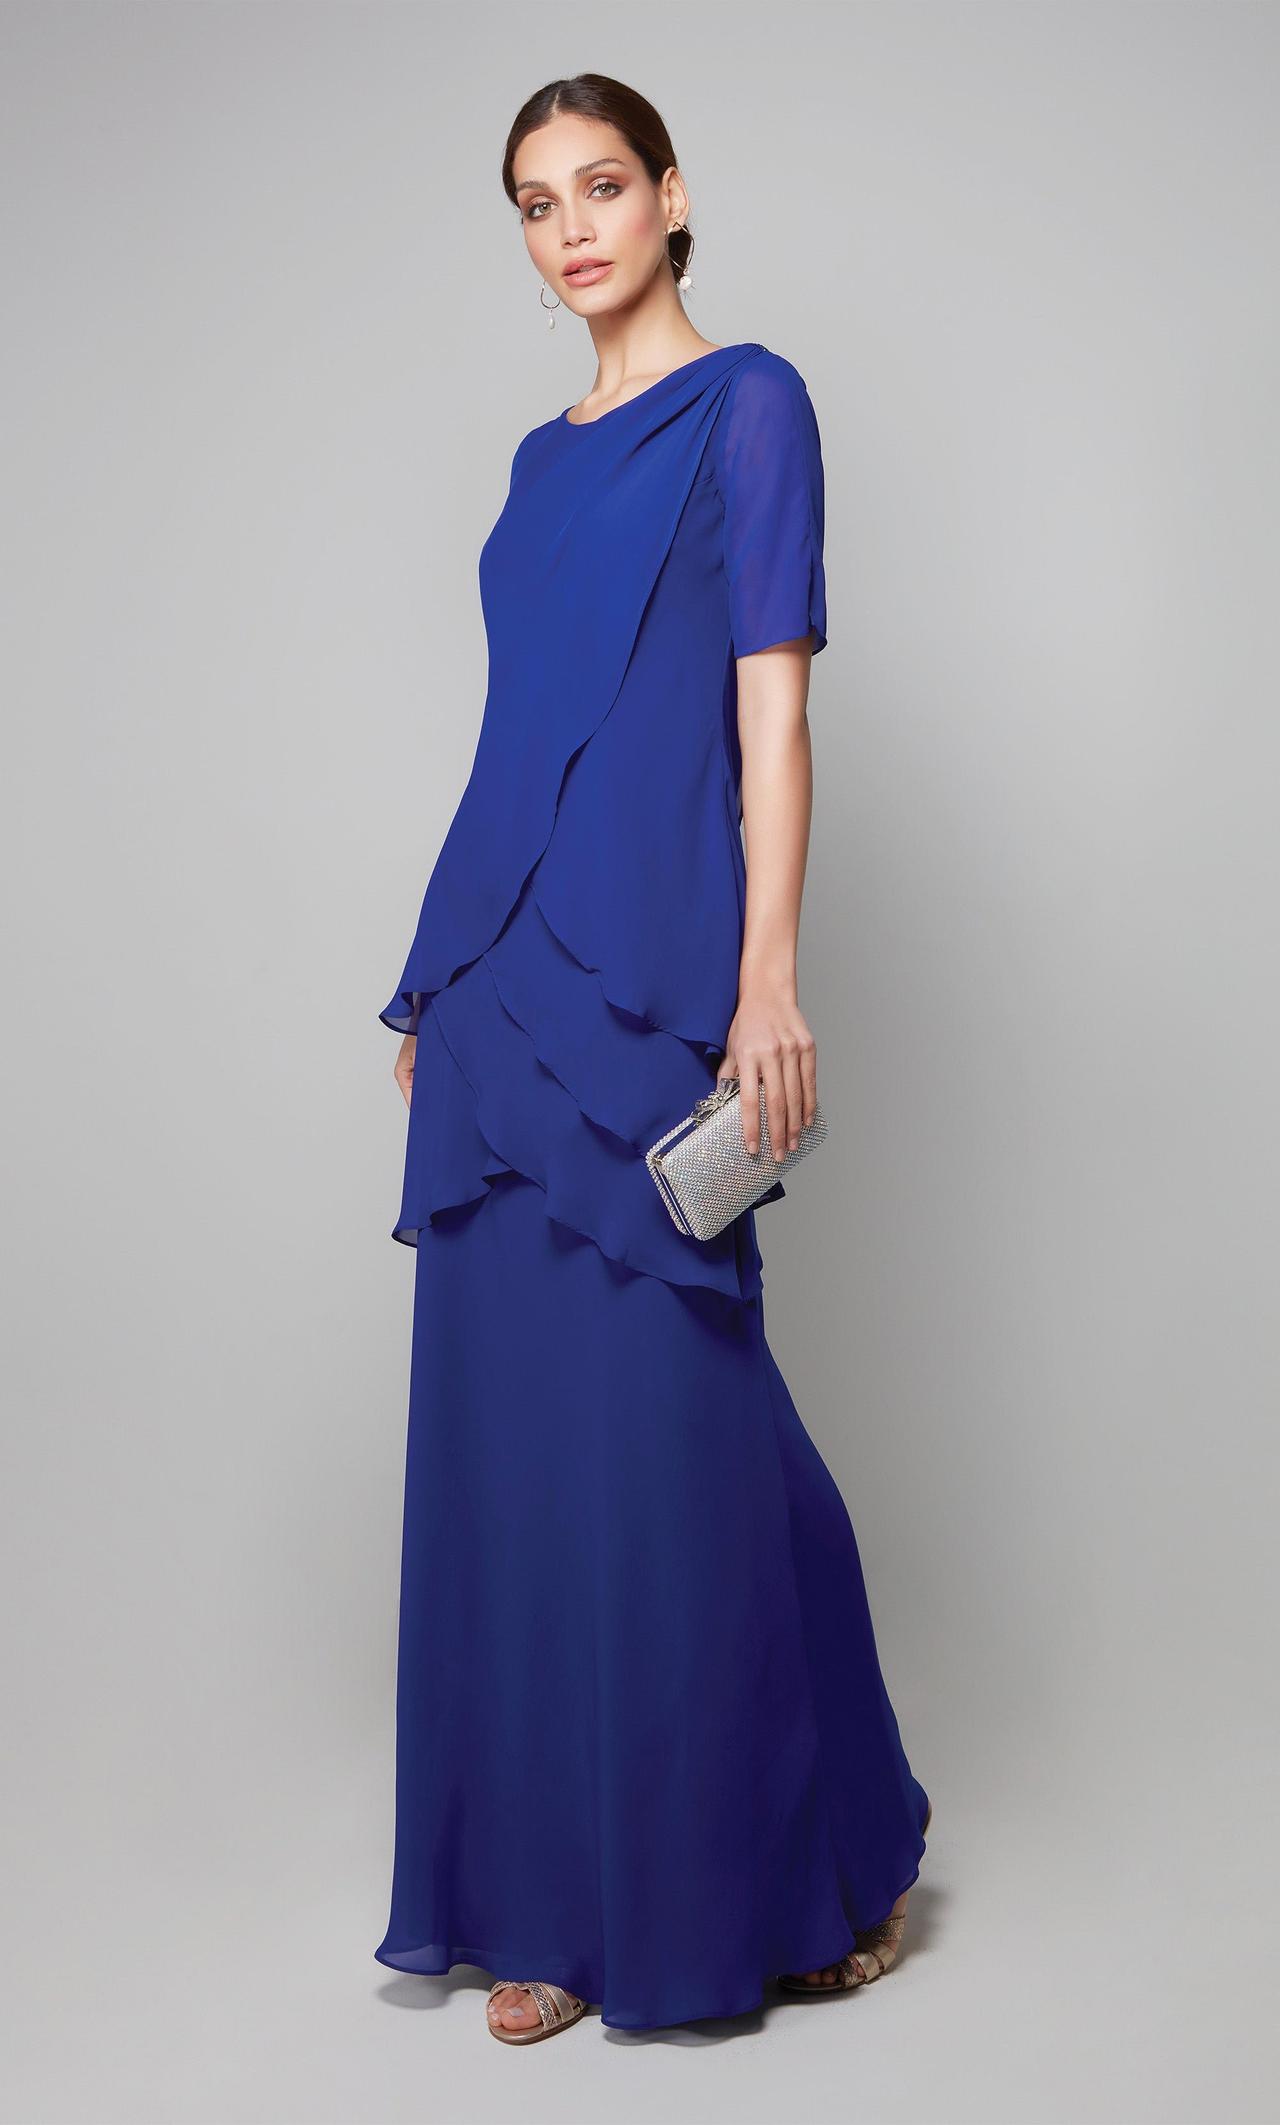 Vestido azul para convidada: 65 modelos e tons para todos os estilos